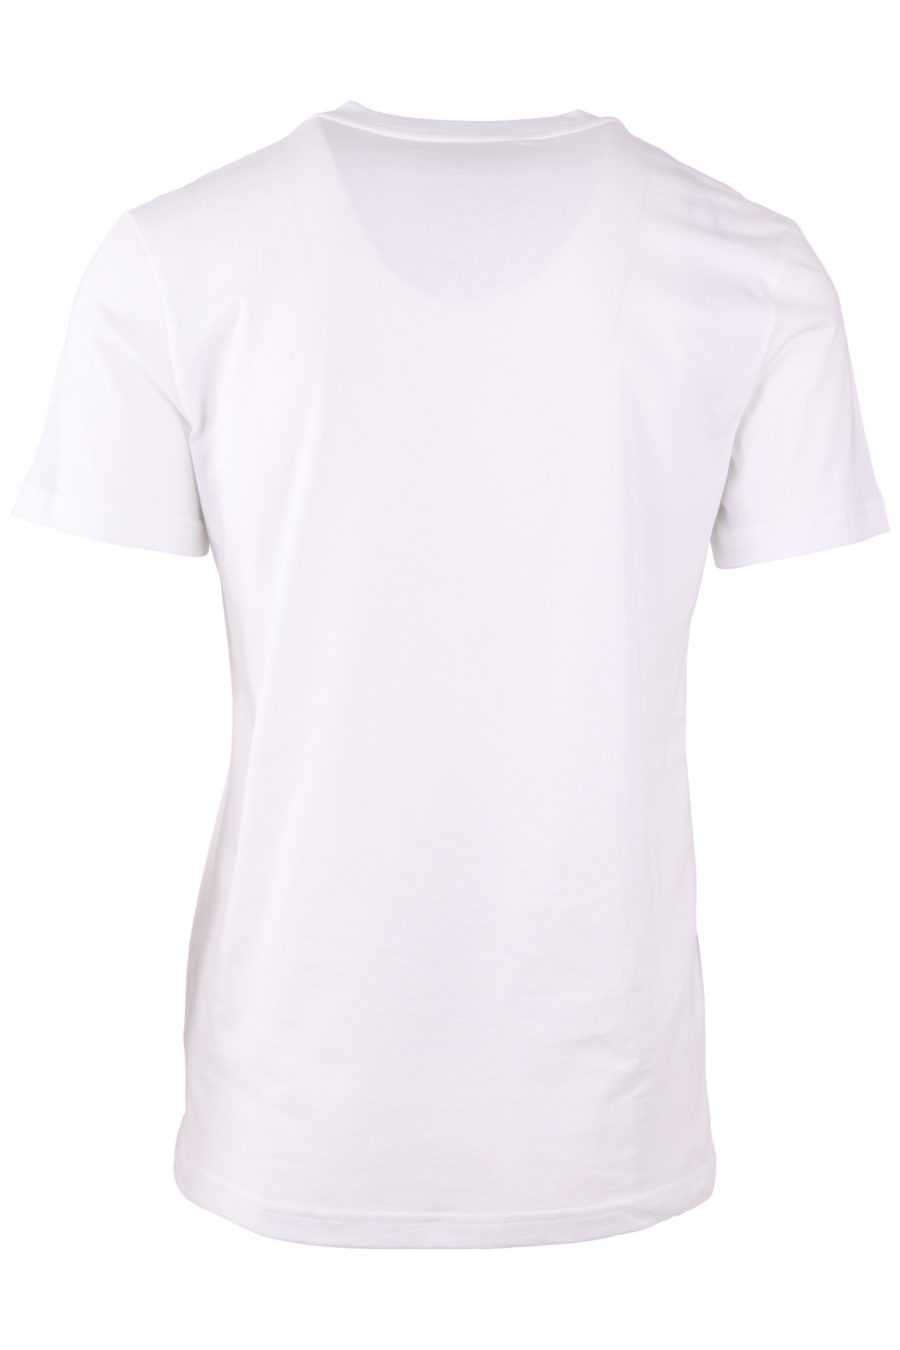 Camiseta Moschino Couture blanca con logo delantero negro - 6e37436b62b71f0f53f23acc2fcd64db50b226fb